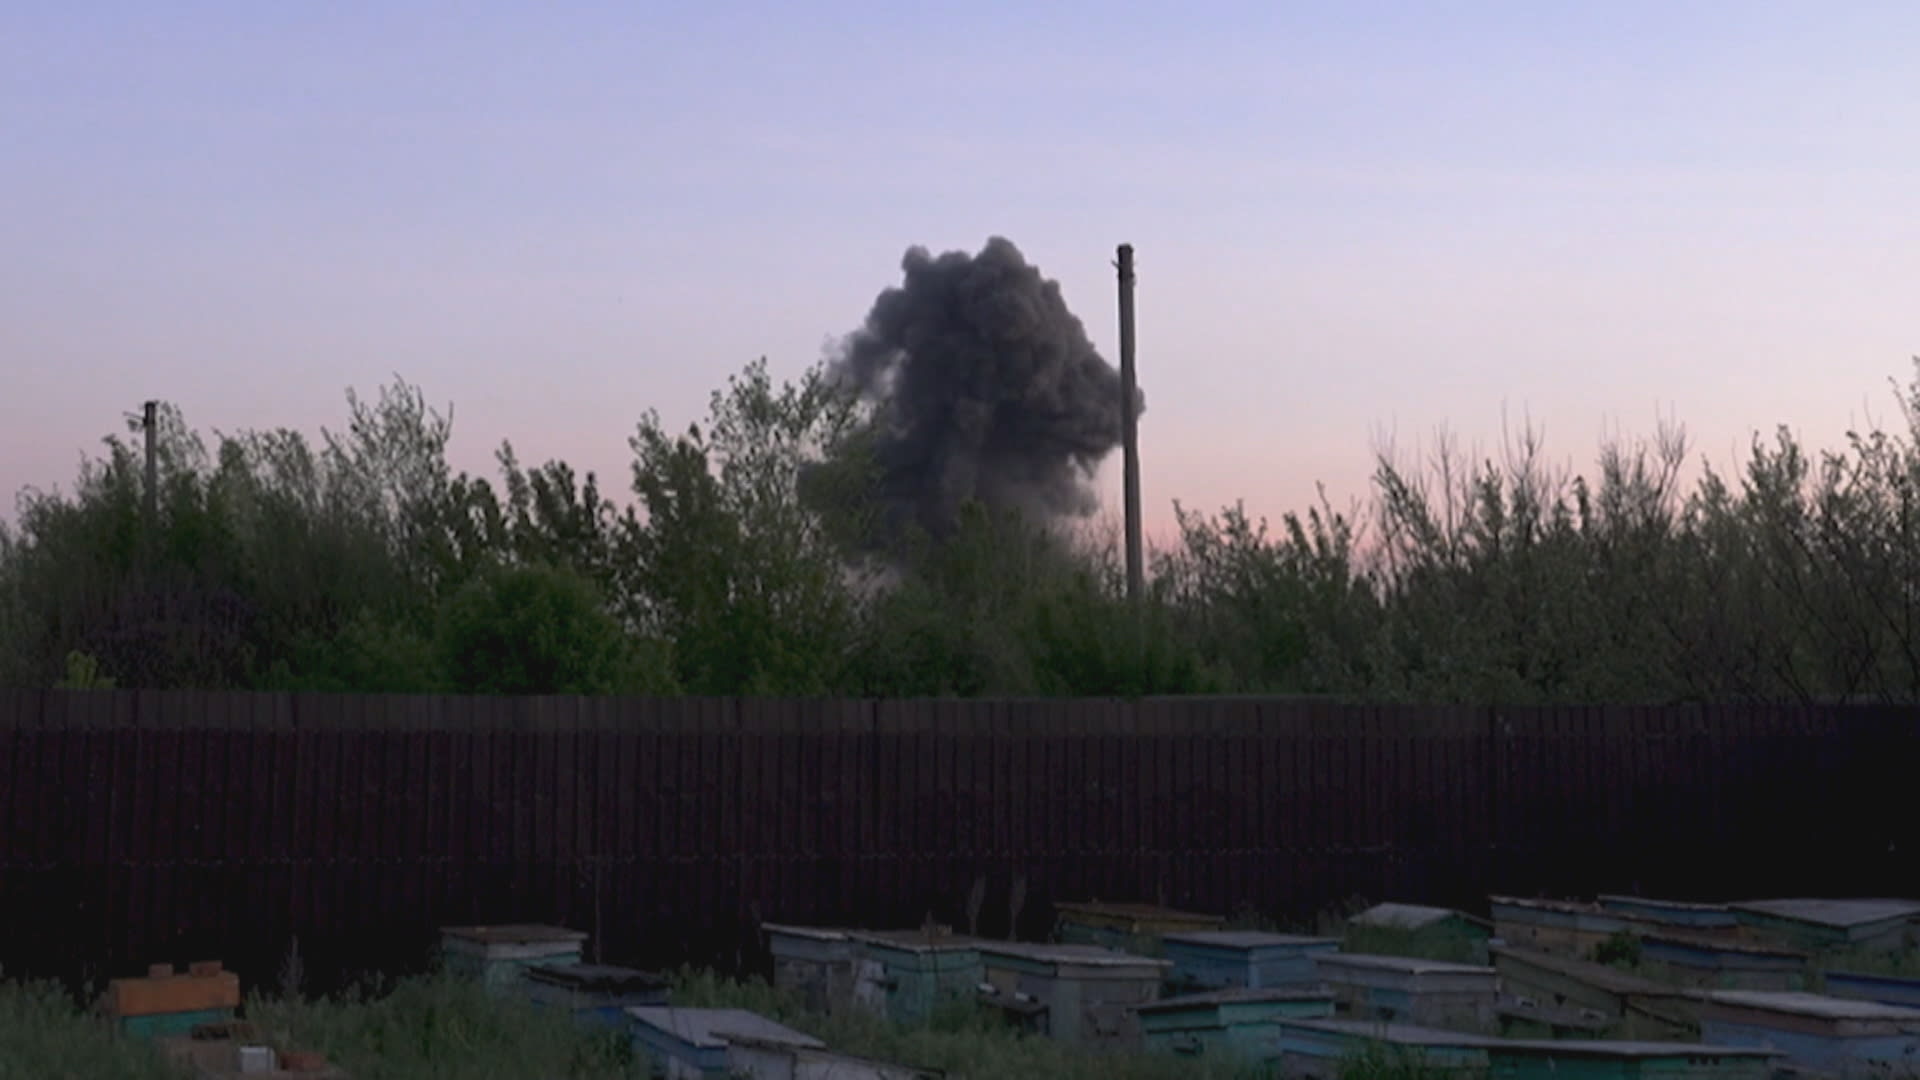 Štáb CNN zachytil dopad ruské rakety vzdálený jen pár set metrů.